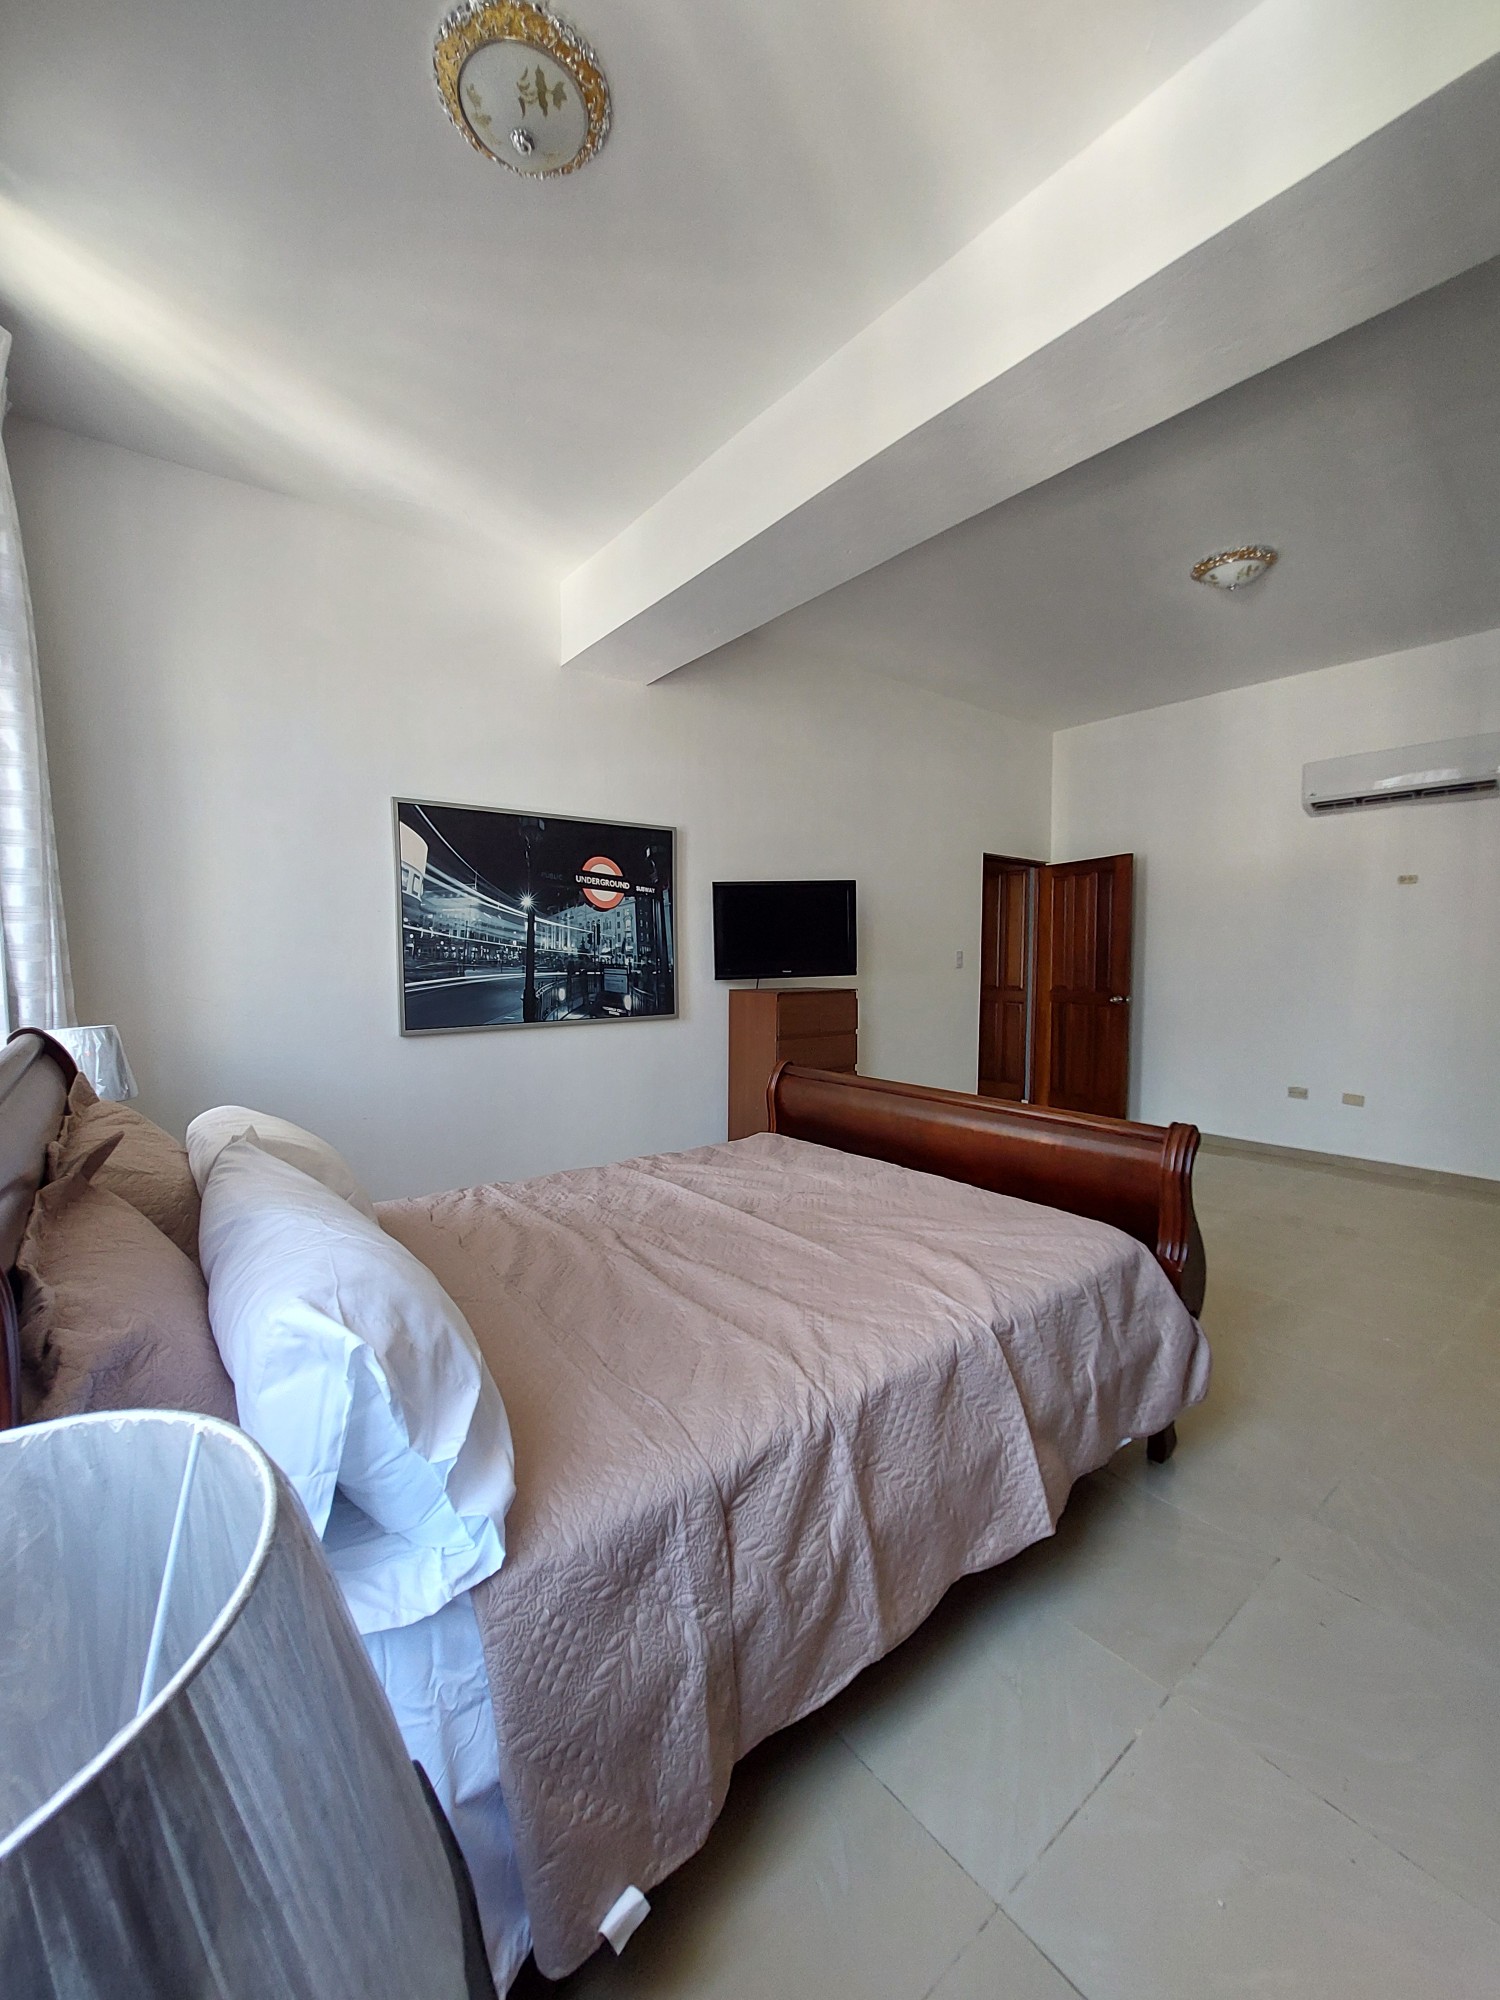 apartamentos - Apartamento amueblado de 1 habitación en piso alto bien ubicado en Piantini 4